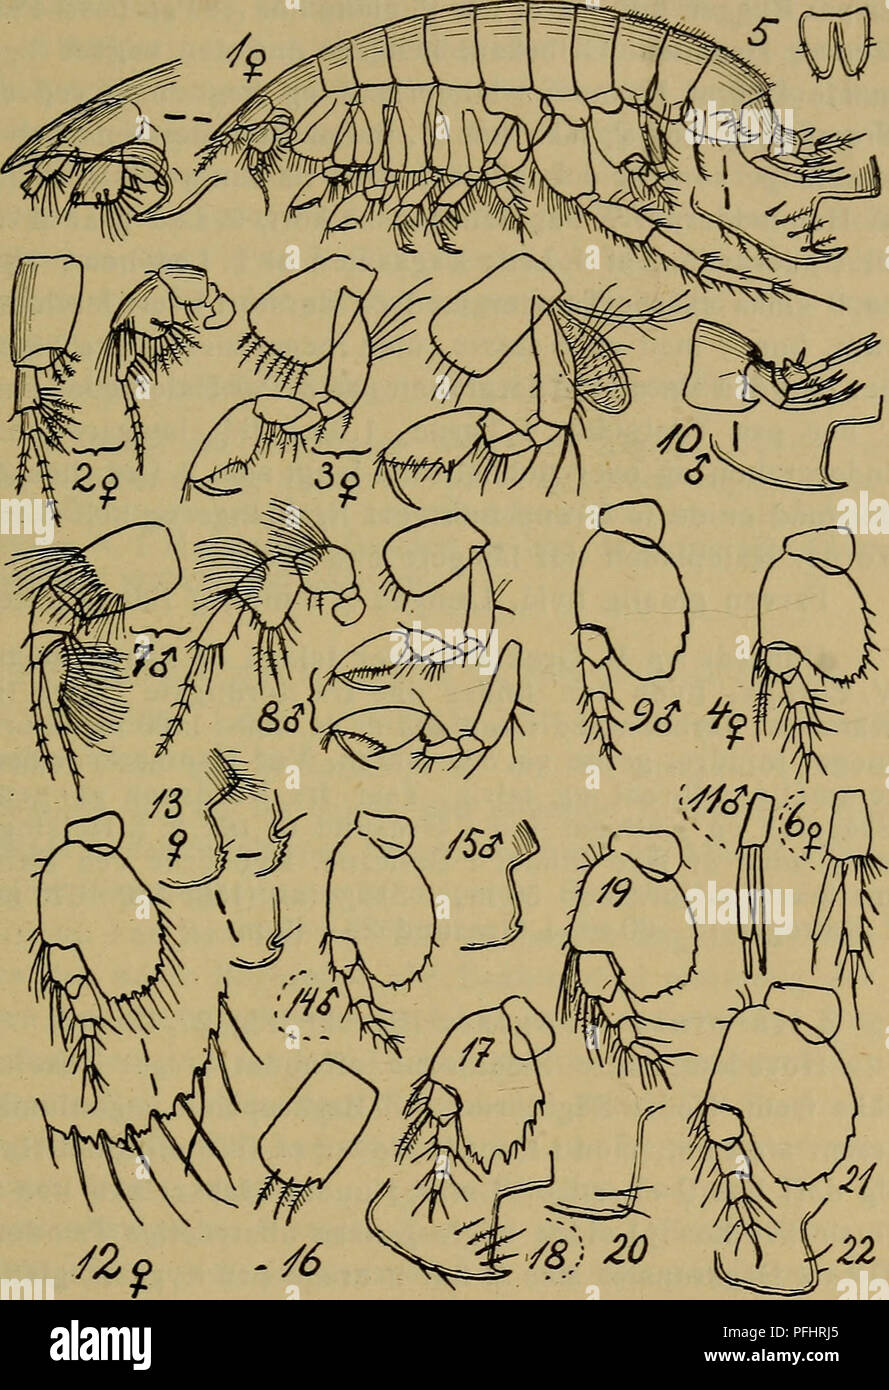 . Danmarks fauna; illustrerede haandbøger over den danske dyreverden... 141. Fig. 27. Harpinia. 1 — 11 : H. antennaria (Følehorn af $, to første Par Ben af $, 7. Par Ben af $, Haleplade, 3. Halefod af $, Føle- horn af $, to første Par Ben af ?, 7. Par Ben af $, 3. Bag- kropsled og Hale af &lt;J, 3. Halefod af $. — 12—15: H. crenu- lata (7. Par Ben af $, 3. Bagkropsled af $ og c?, 7. Par Ben af #). — 16—18: H. pectinata (Sideplade til 2. Par Ben, 7. Par Ben, 3^ Bagkropsled). — 19—20: H. truncata (7. Par Ben, 3. Bag- kropsled). — 21—22: H. lævis (samme Dele).. Please note that these images are e Stock Photo